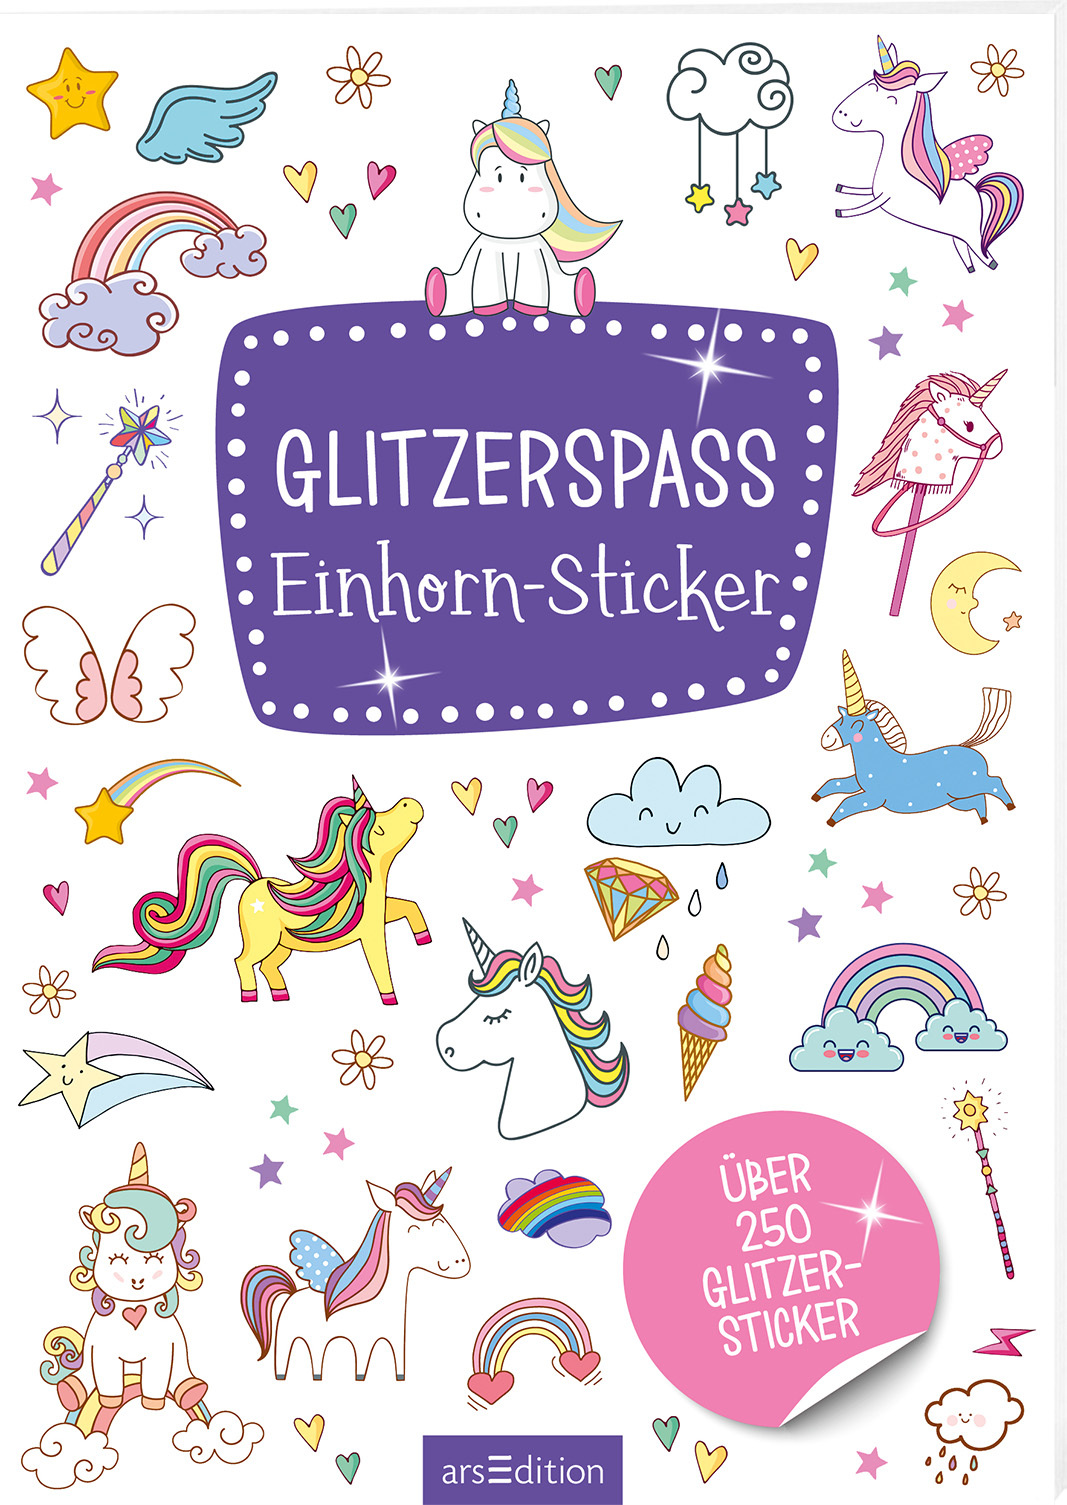 Glitzerspass Einhorn-Sticker